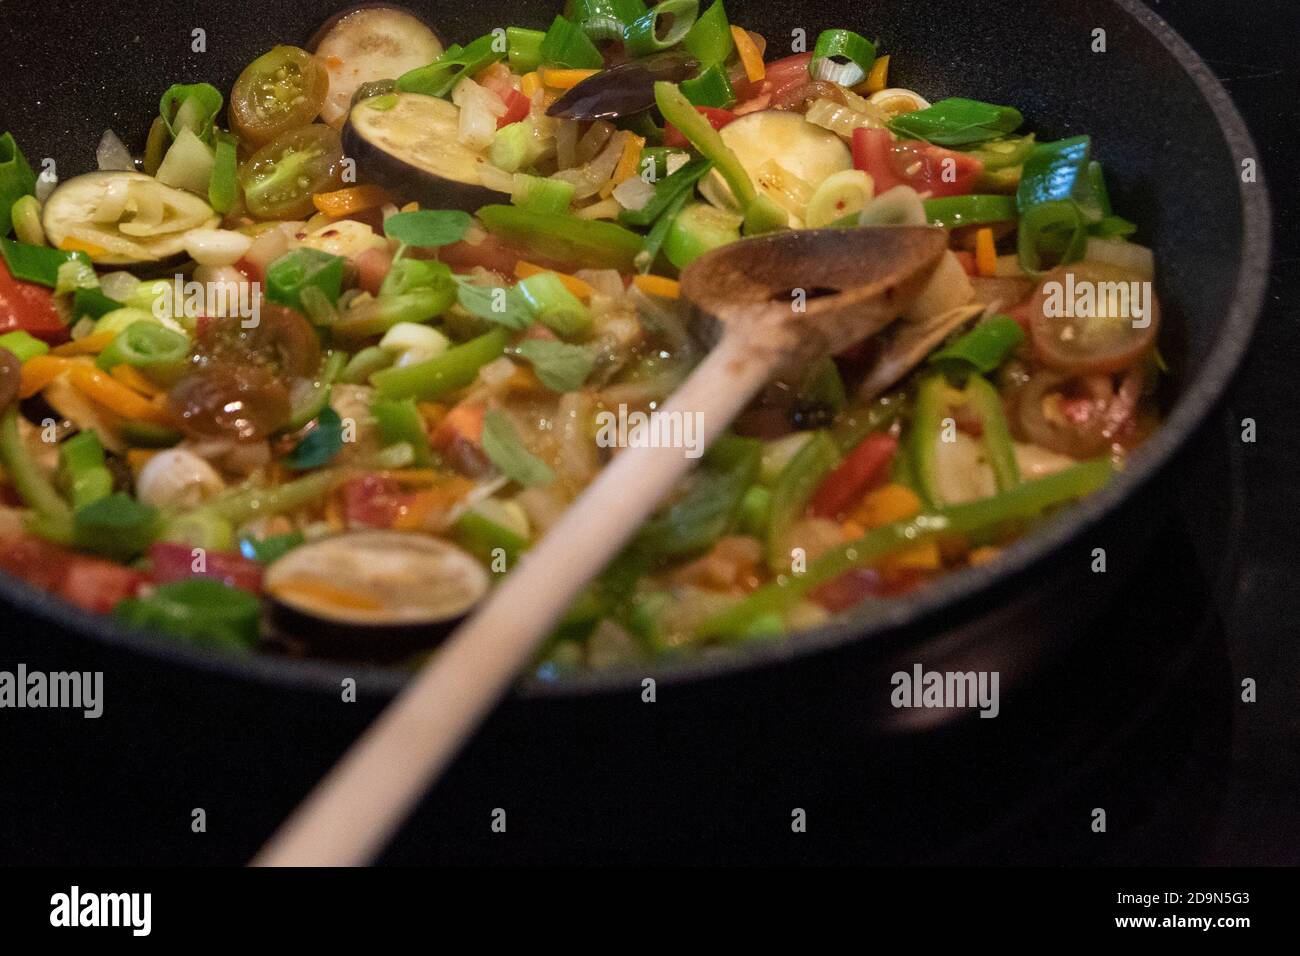 Cosechando berenjenas y cocinándolas vegetarianas: Nutrición saludable y sostenible desde tu propio jardín. Preparación de una salsa vegetal con berenjena. Foto de stock